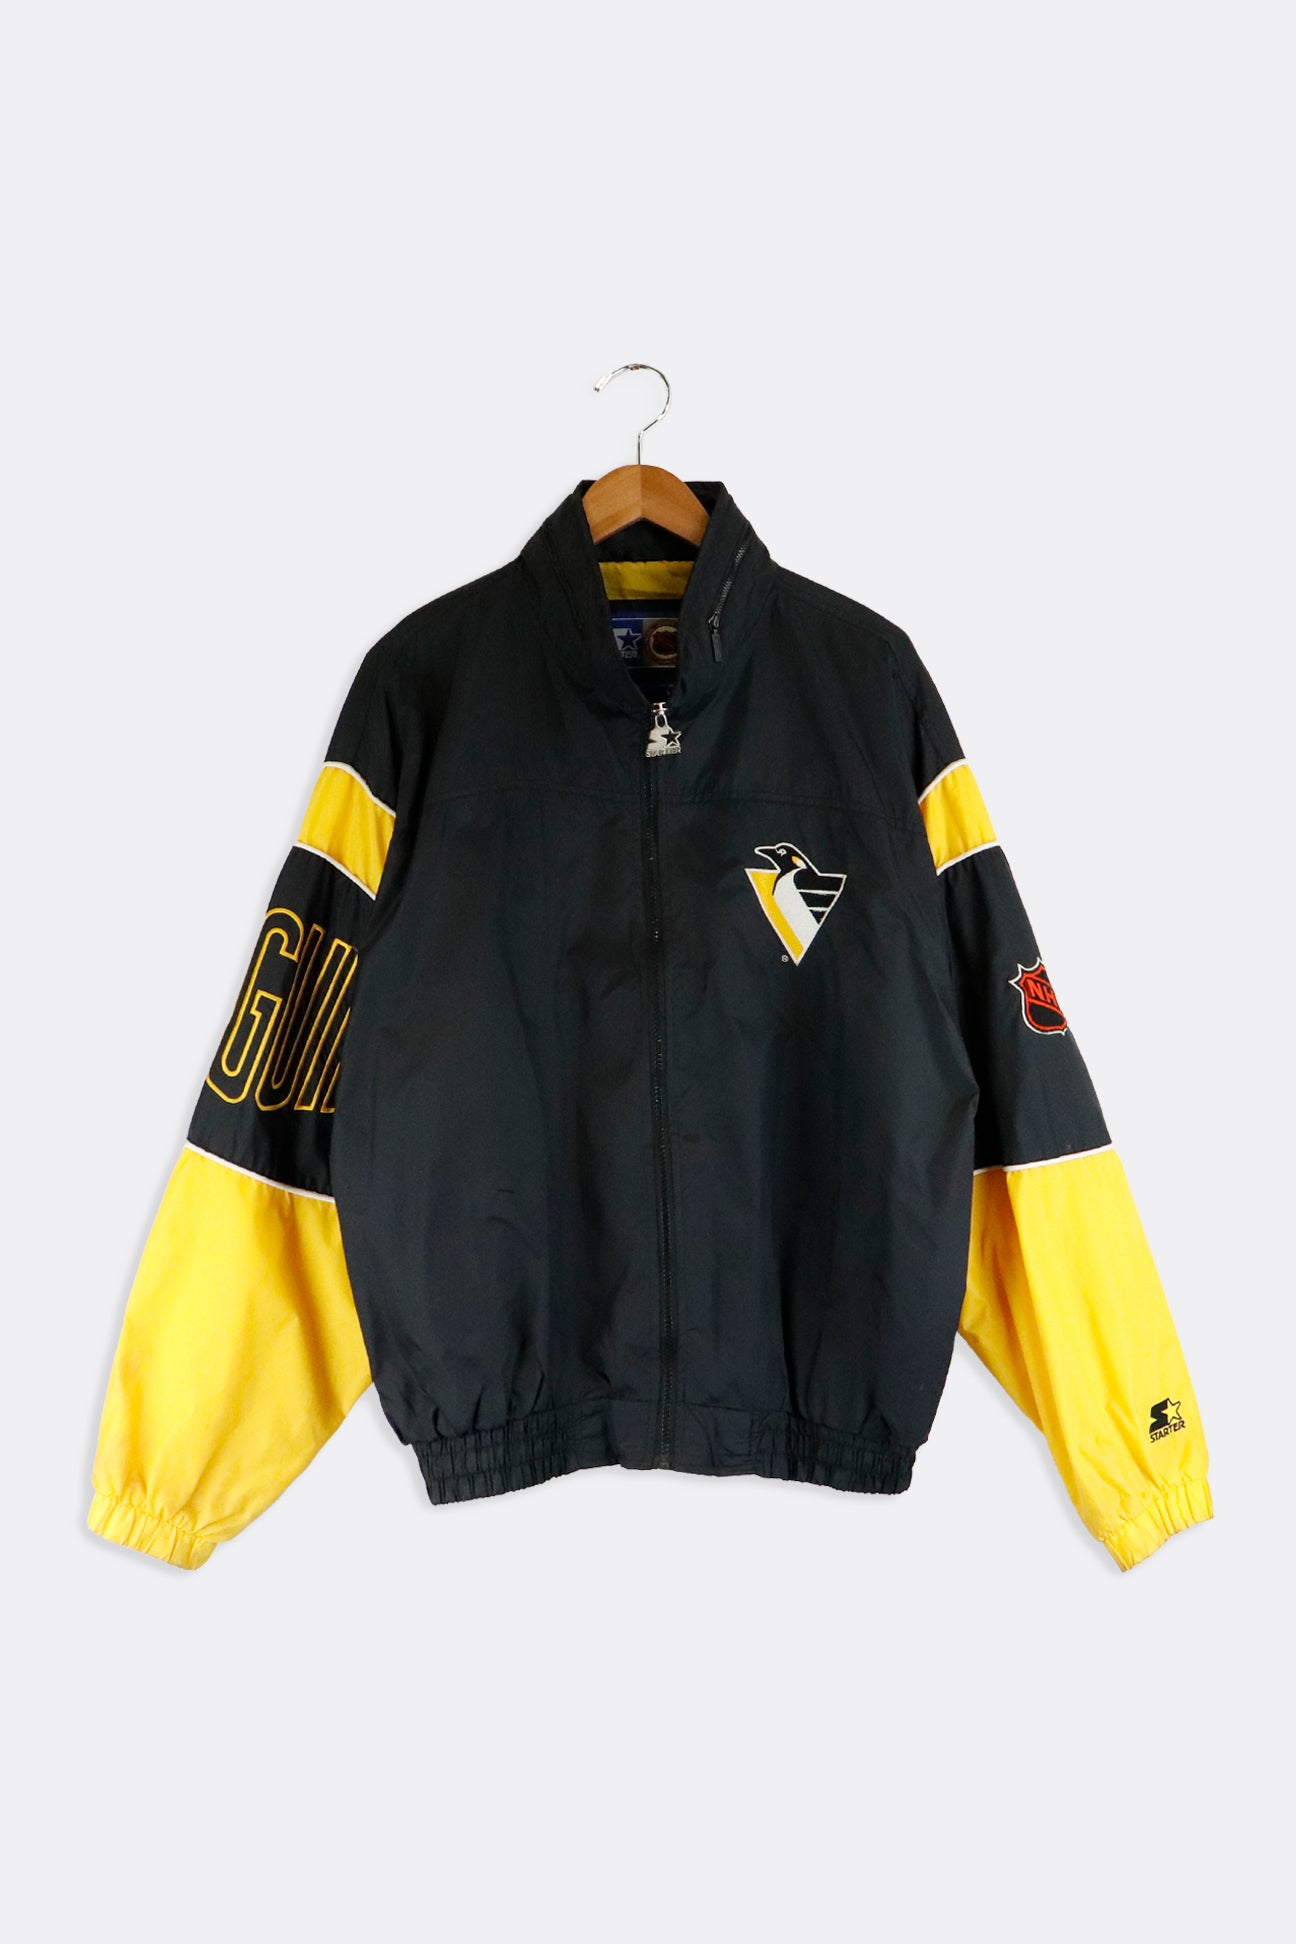 Vintage 90s Pittsburgh Penguins NHL Starter 1/2 Zip Pullover